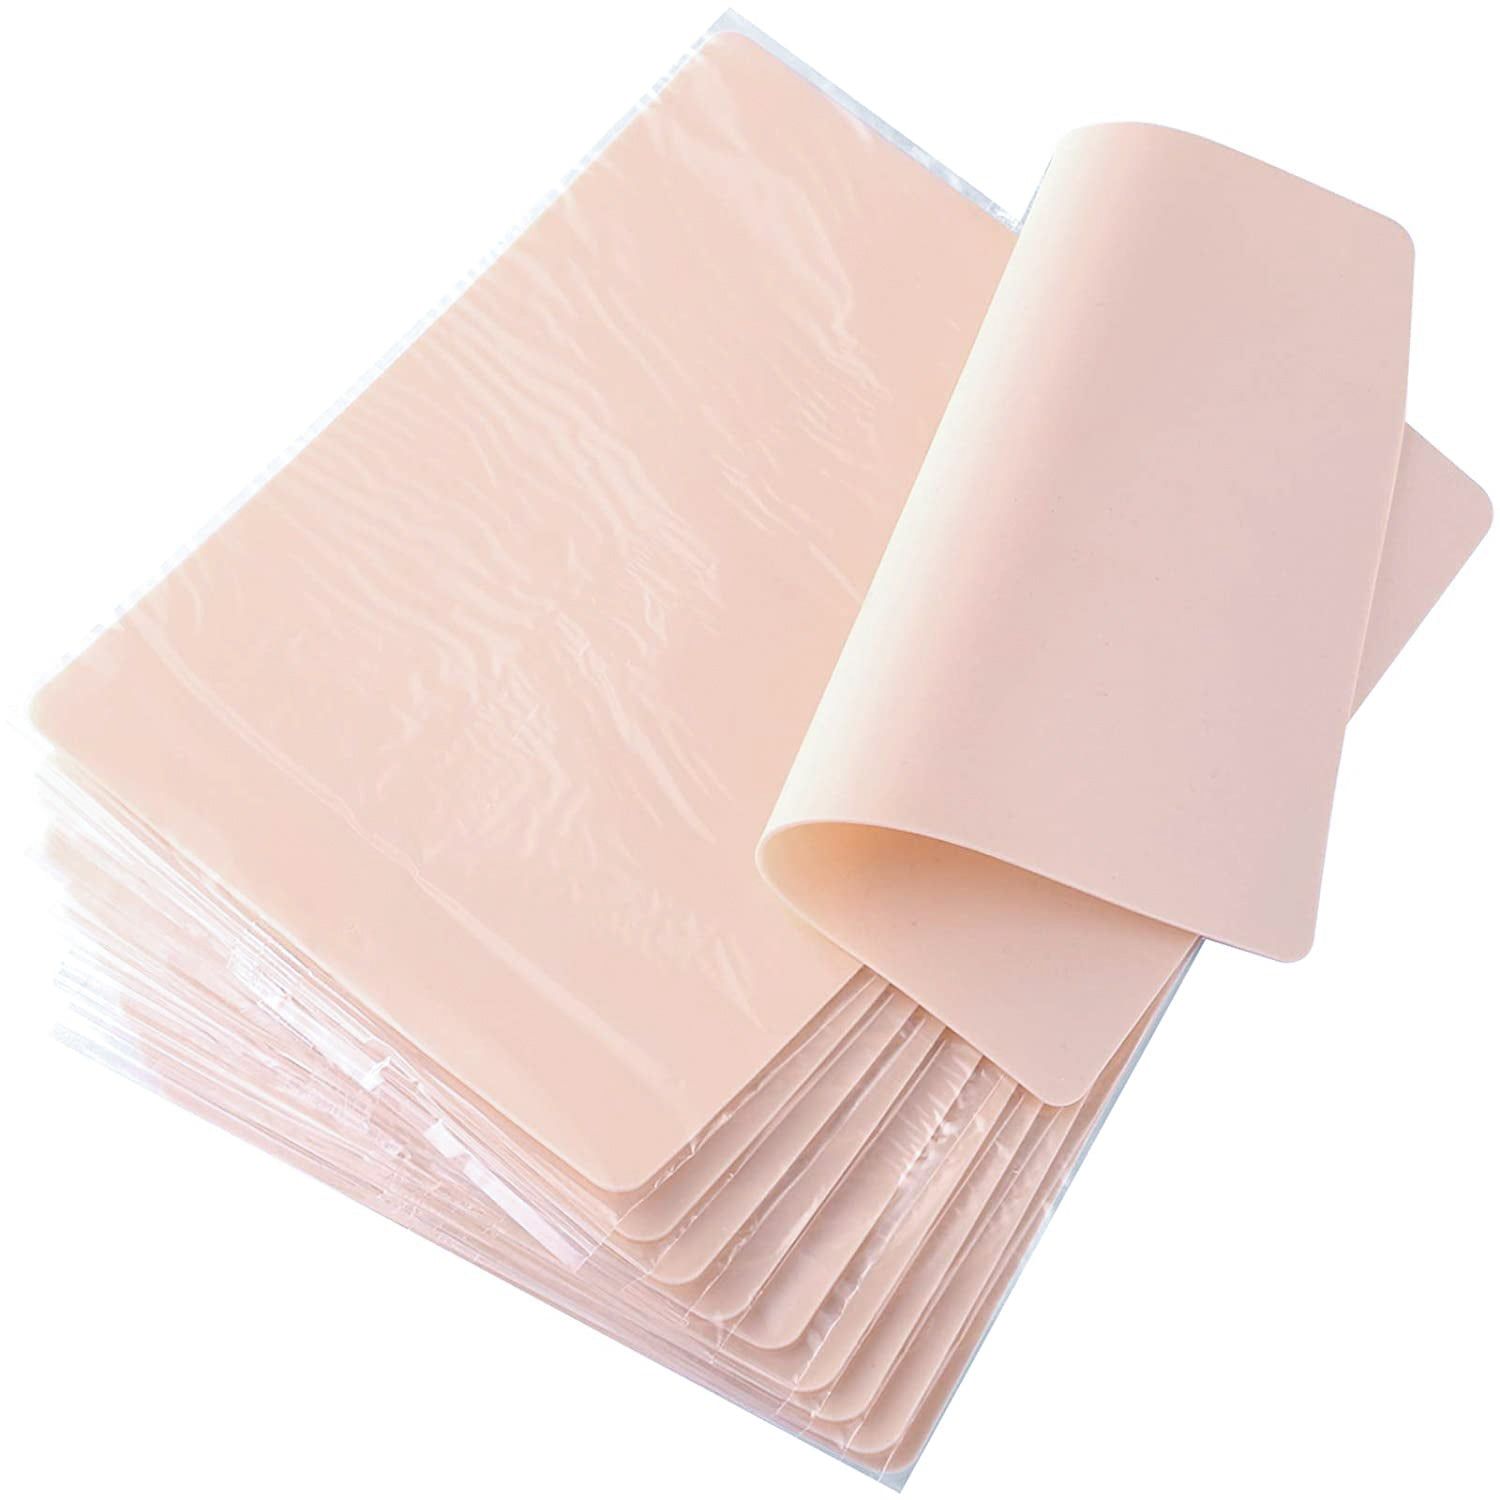 Reversible Silicone Practice Skin 10 Pack Beige -  - HighbrowLab - HighbrowLab 